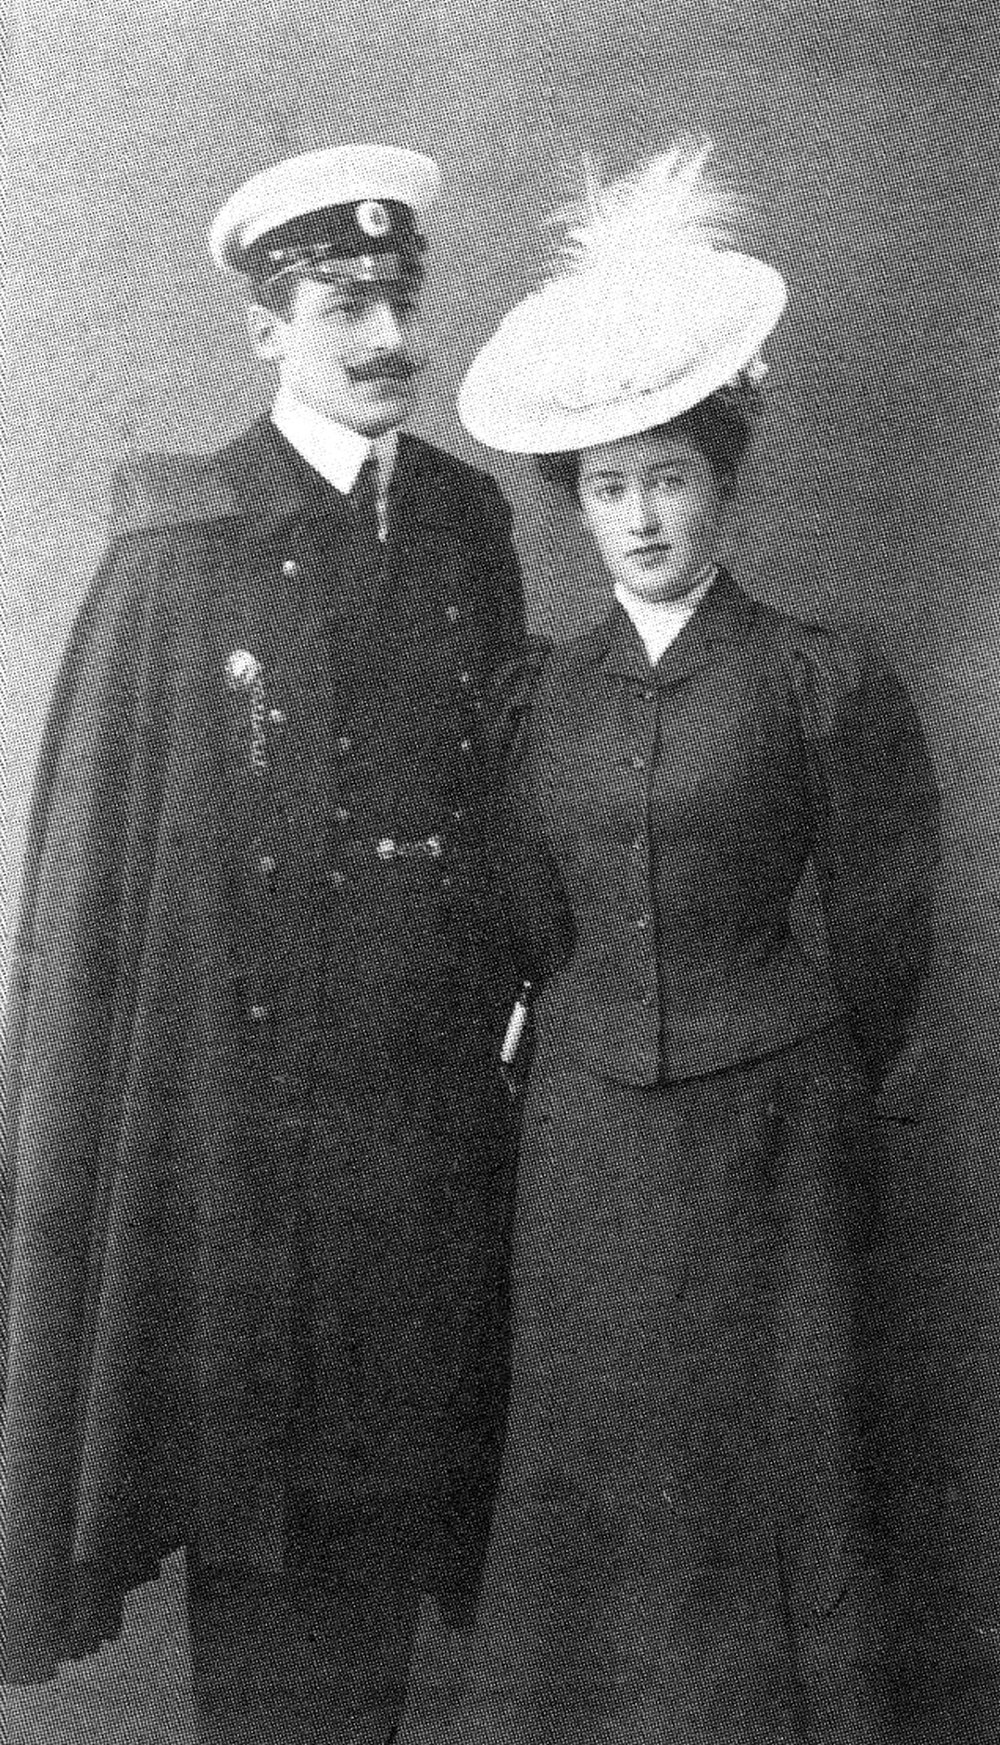 Образцовая семья офицера флота: Мориц Кнюпфер с супругой Люси.